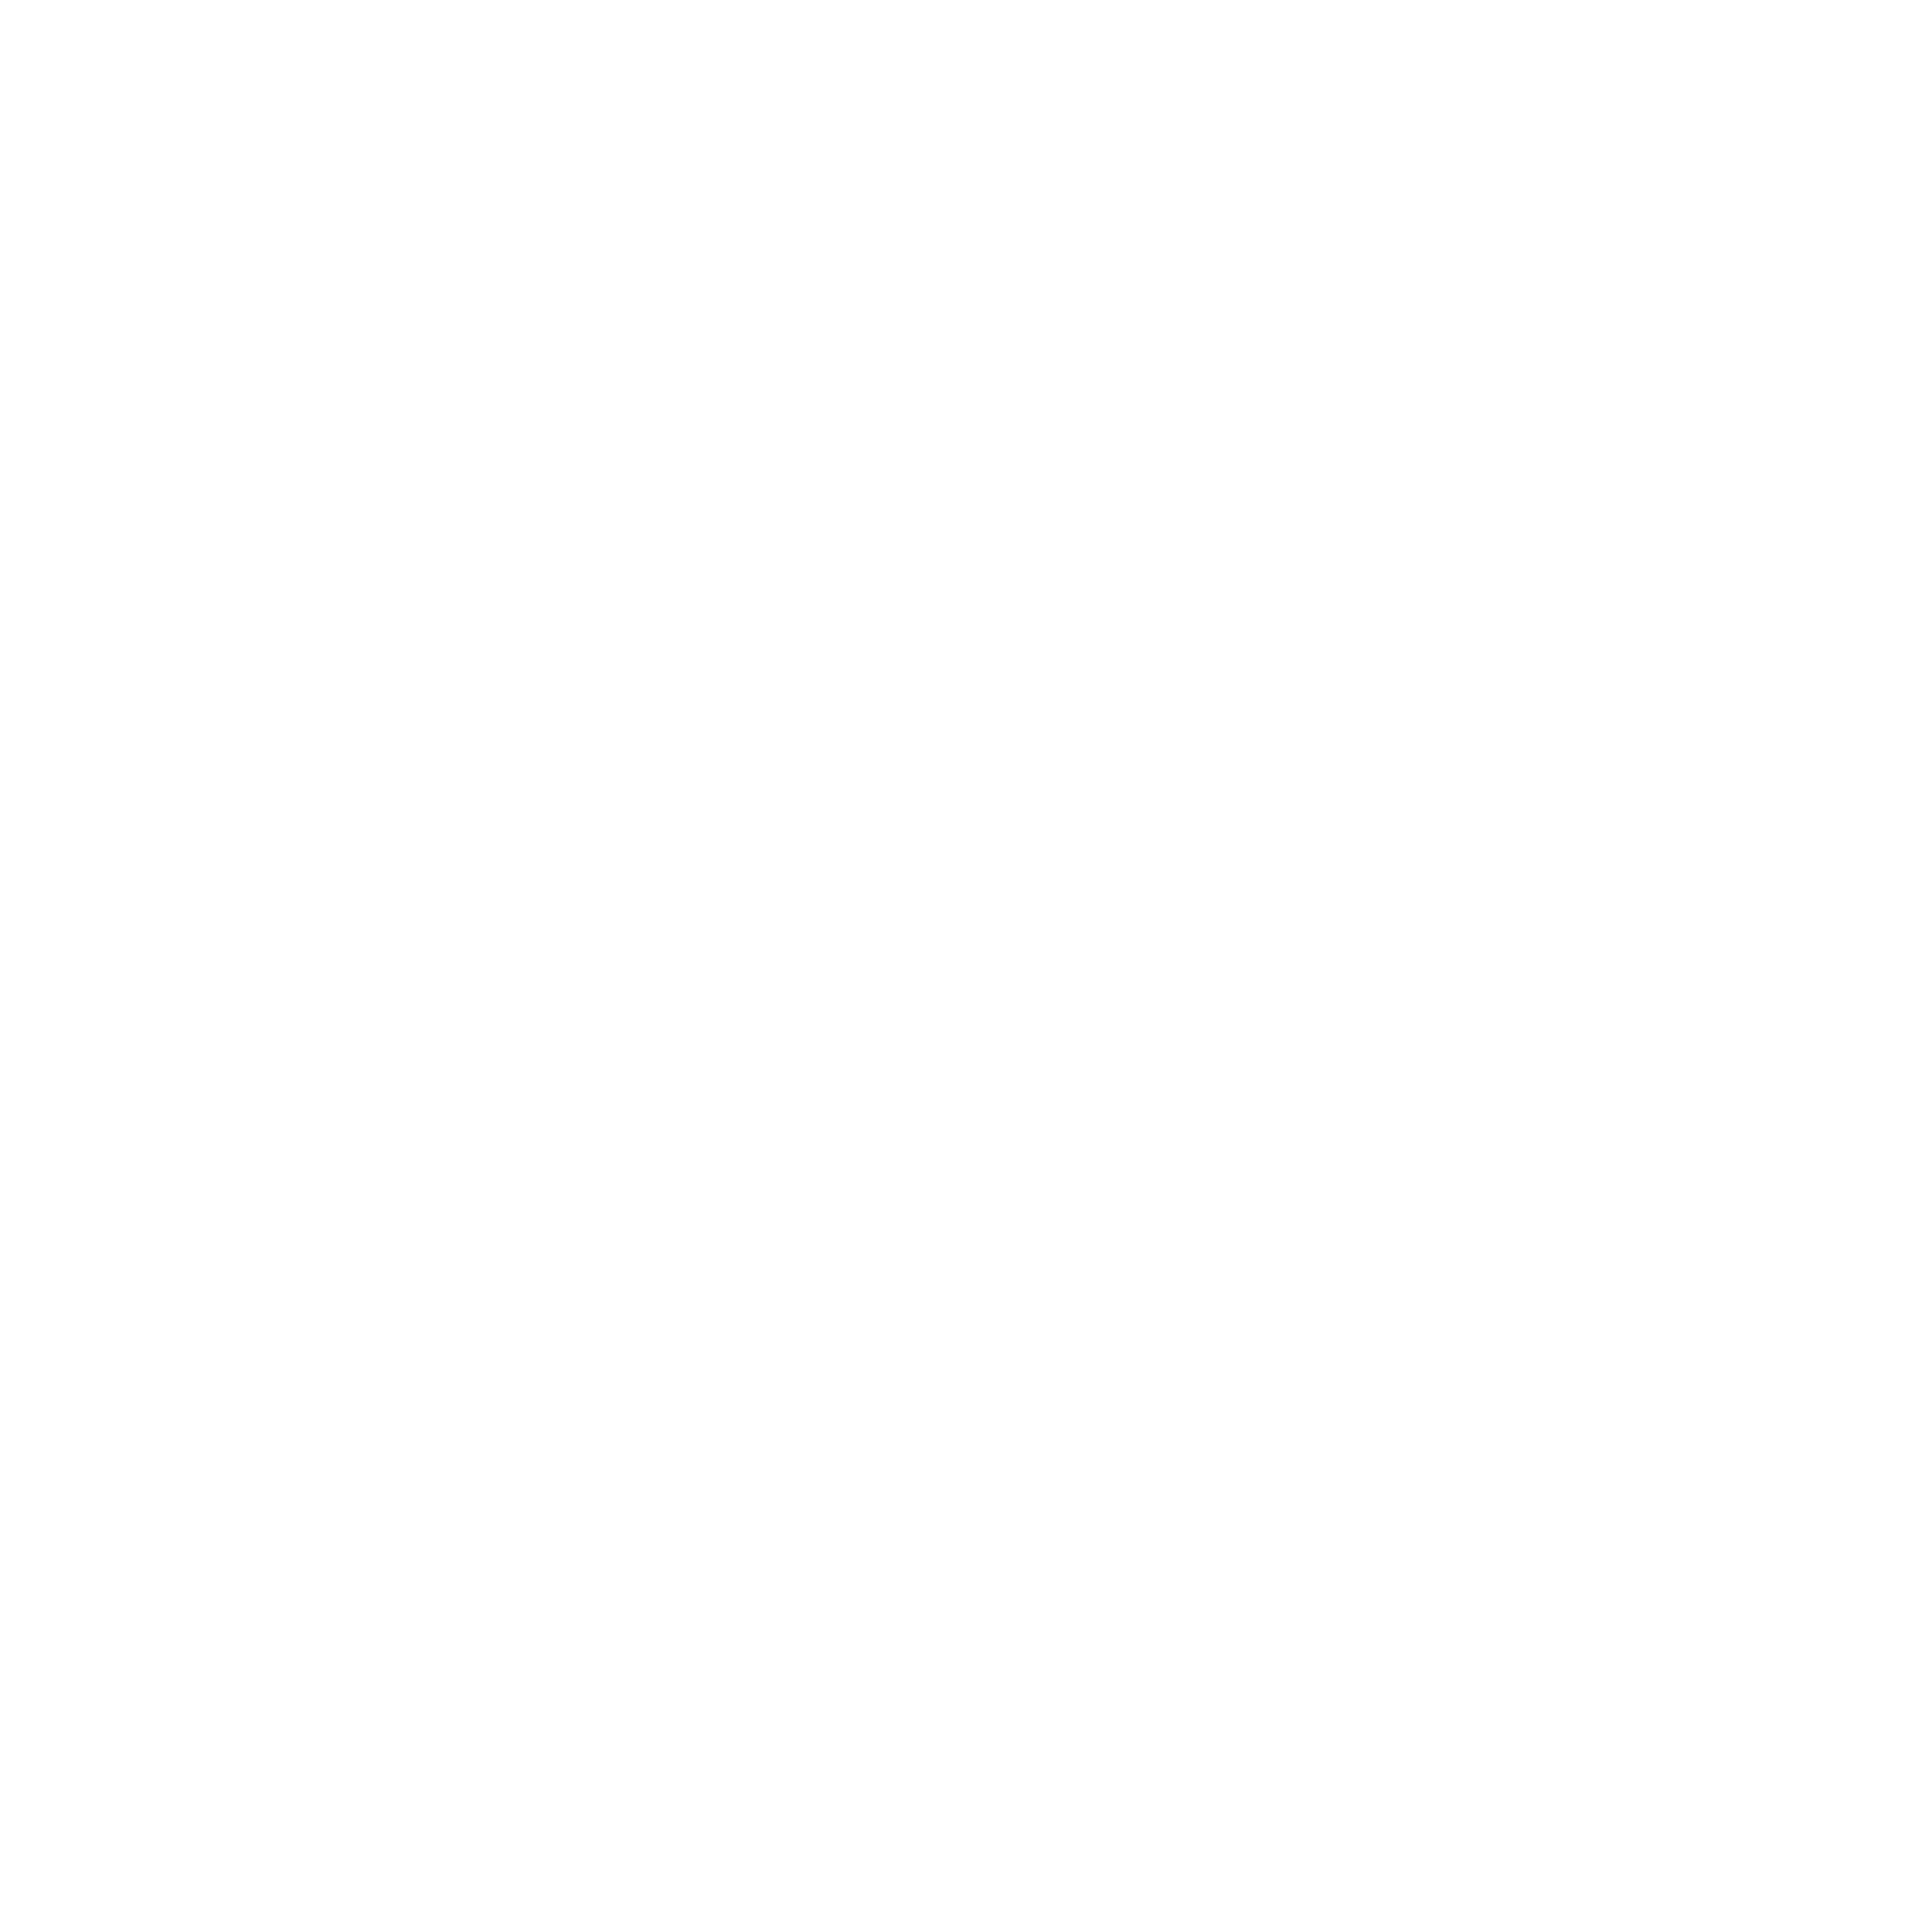 Jeddah Chamber of commerce